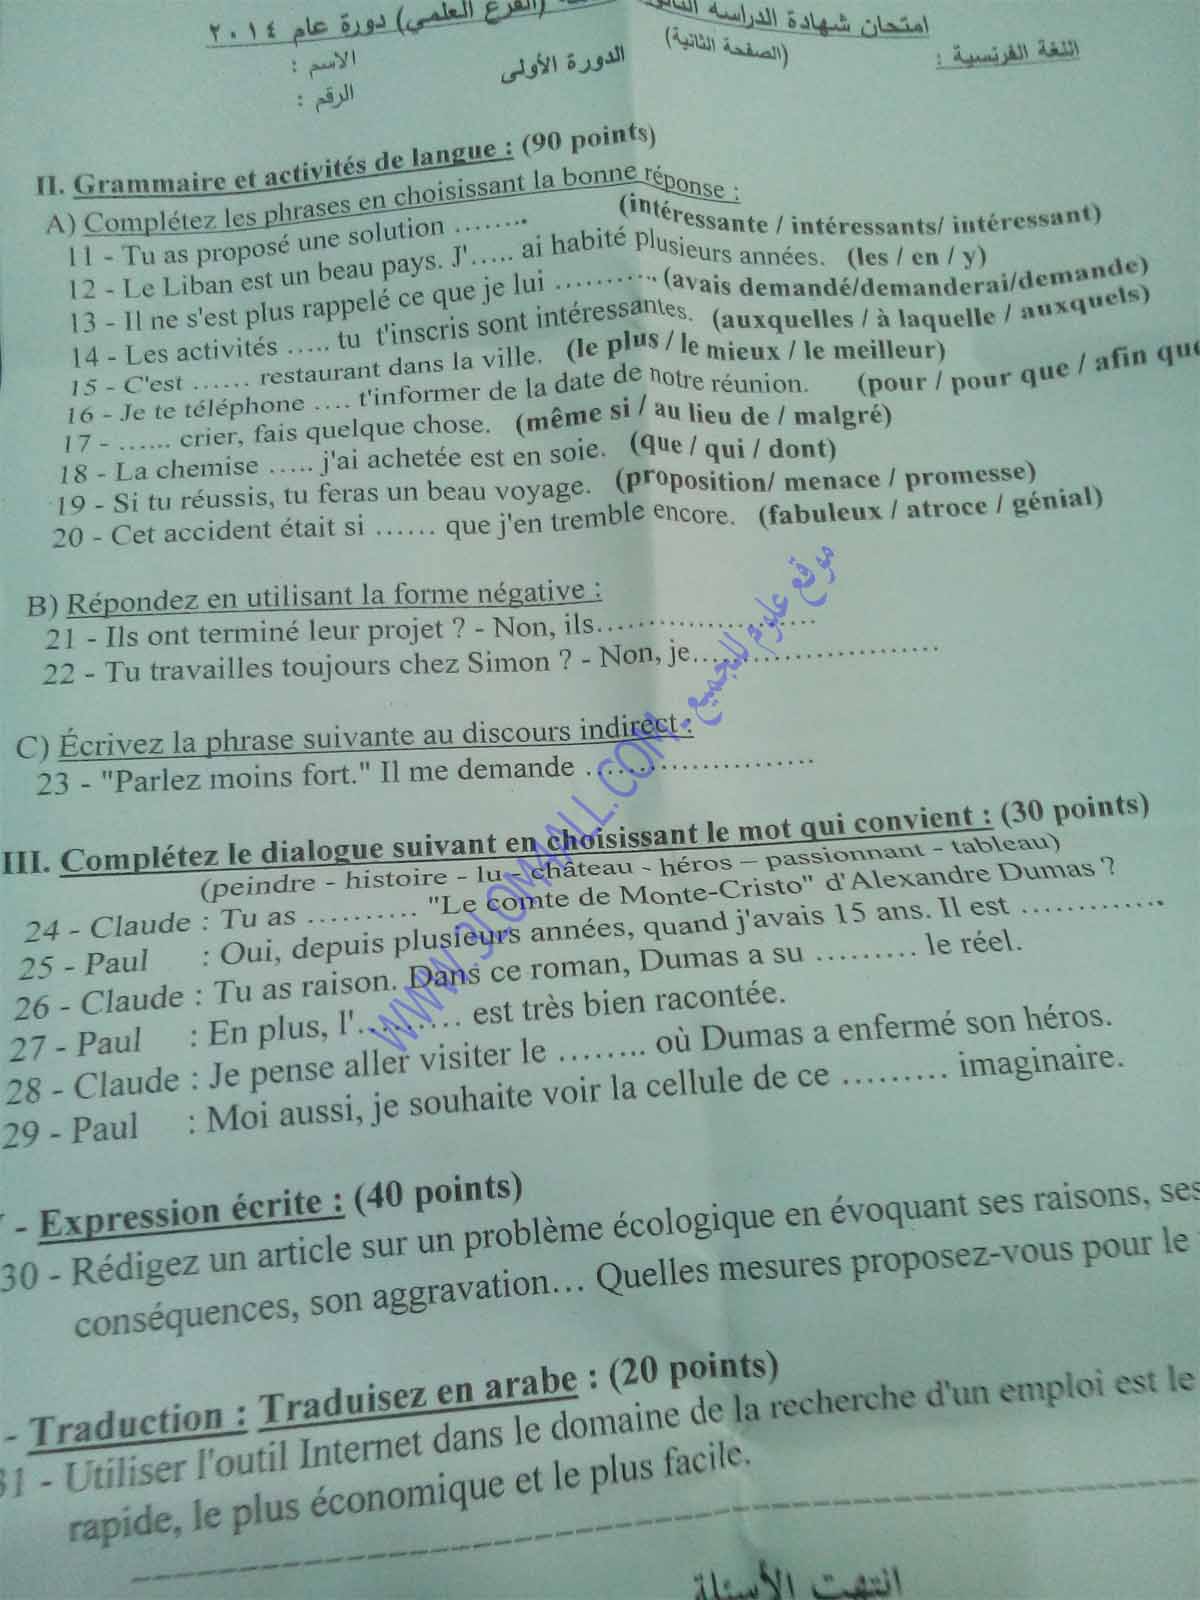 وزارة التربية قي سوريا : ورقة امتحان مادة اللغة الفرنسية شهادة الدراسة الثانوية العامة دورة 2014 الأدبي و العلمي 